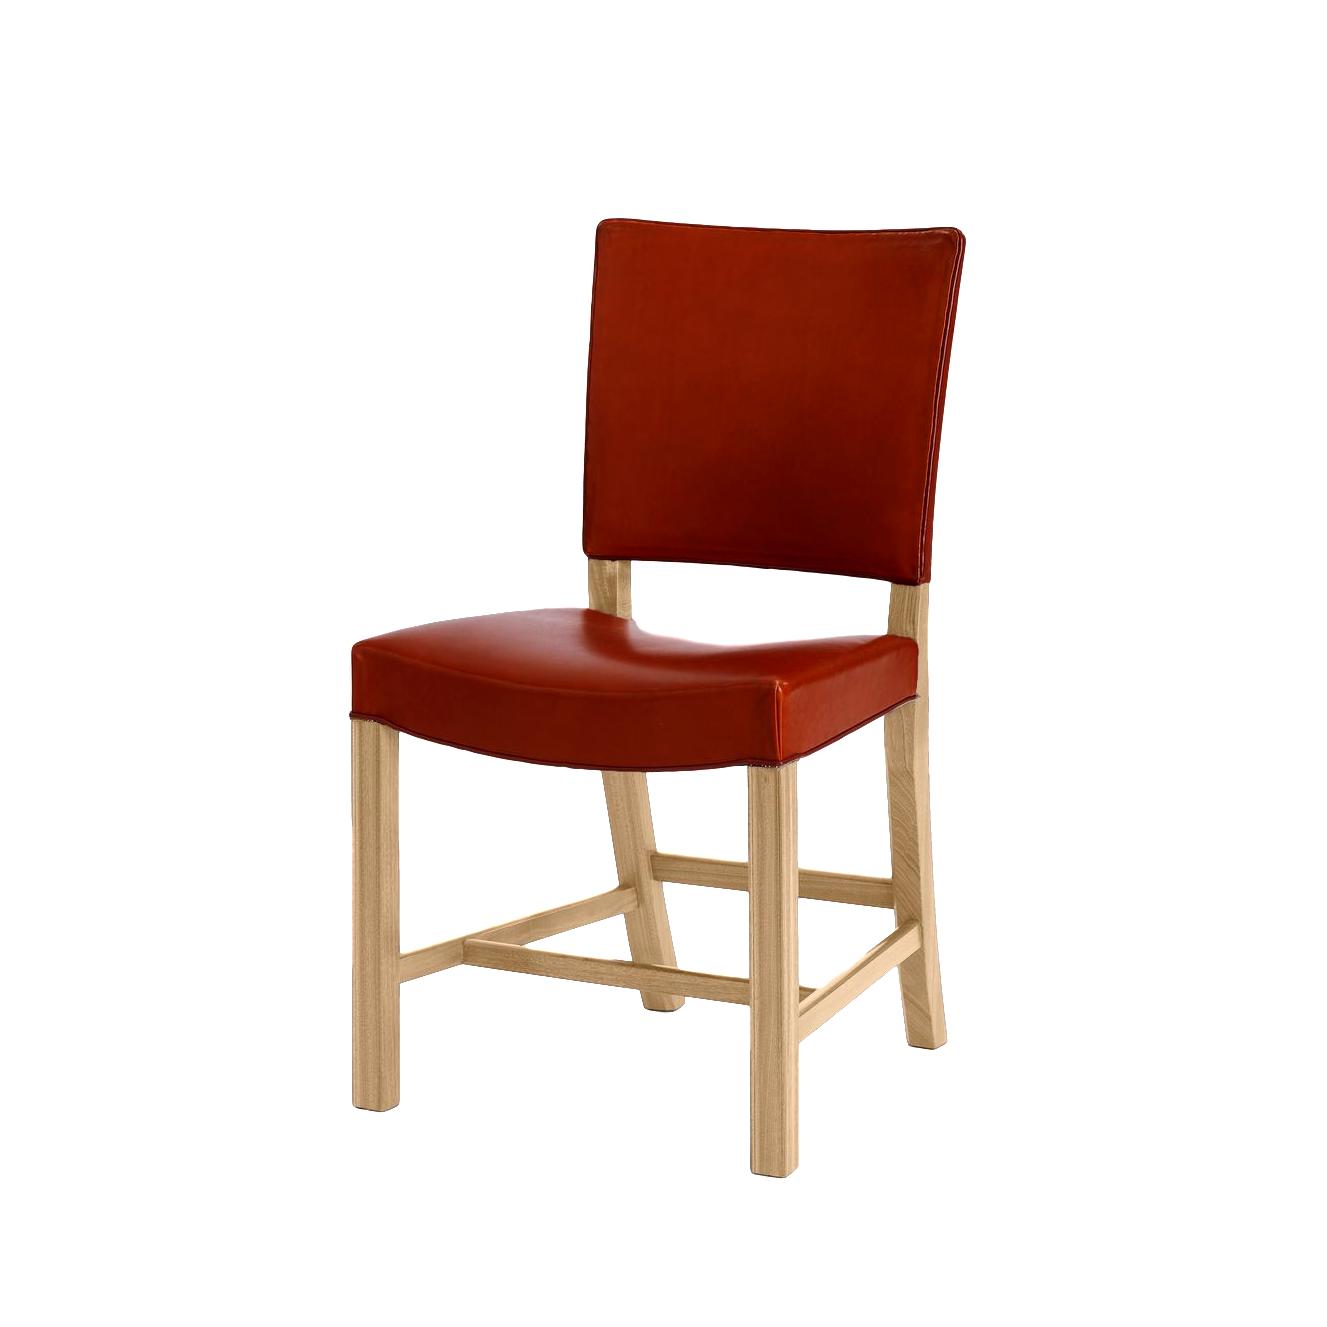 Carl Hansen KK39490 Liten röd stol, ekvålt/svart läder